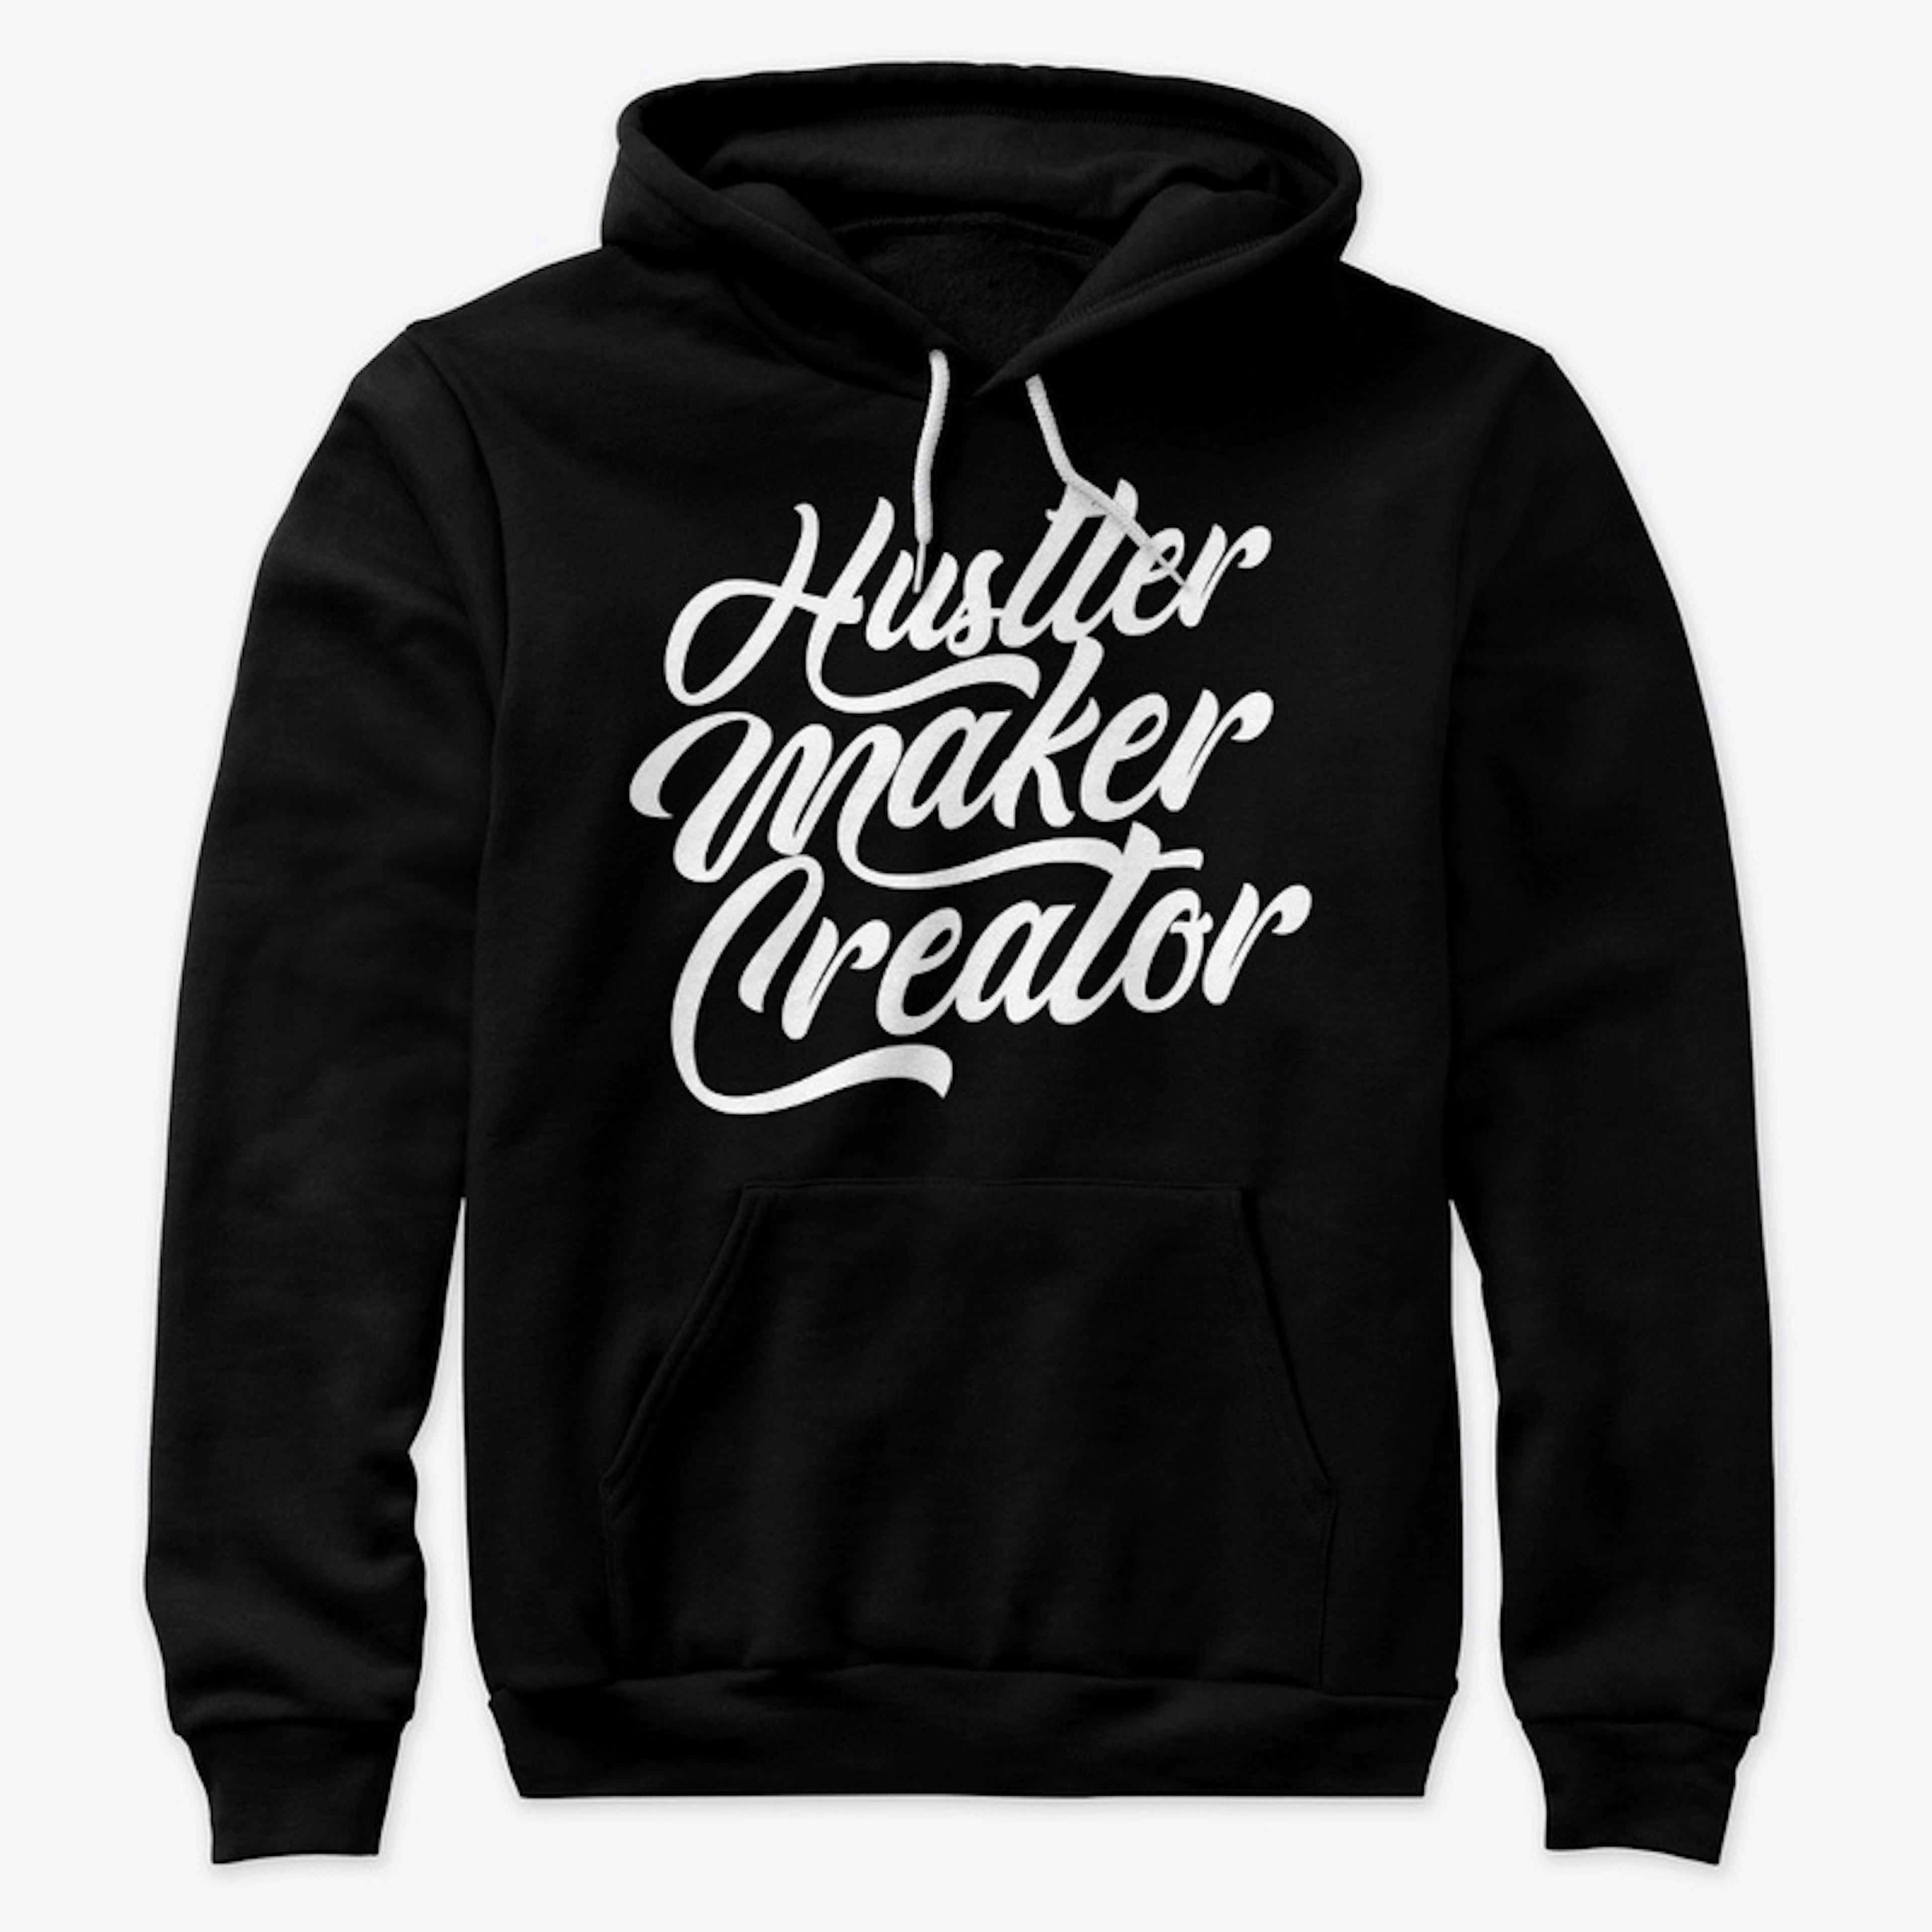 Hustler. Maker. Creator.